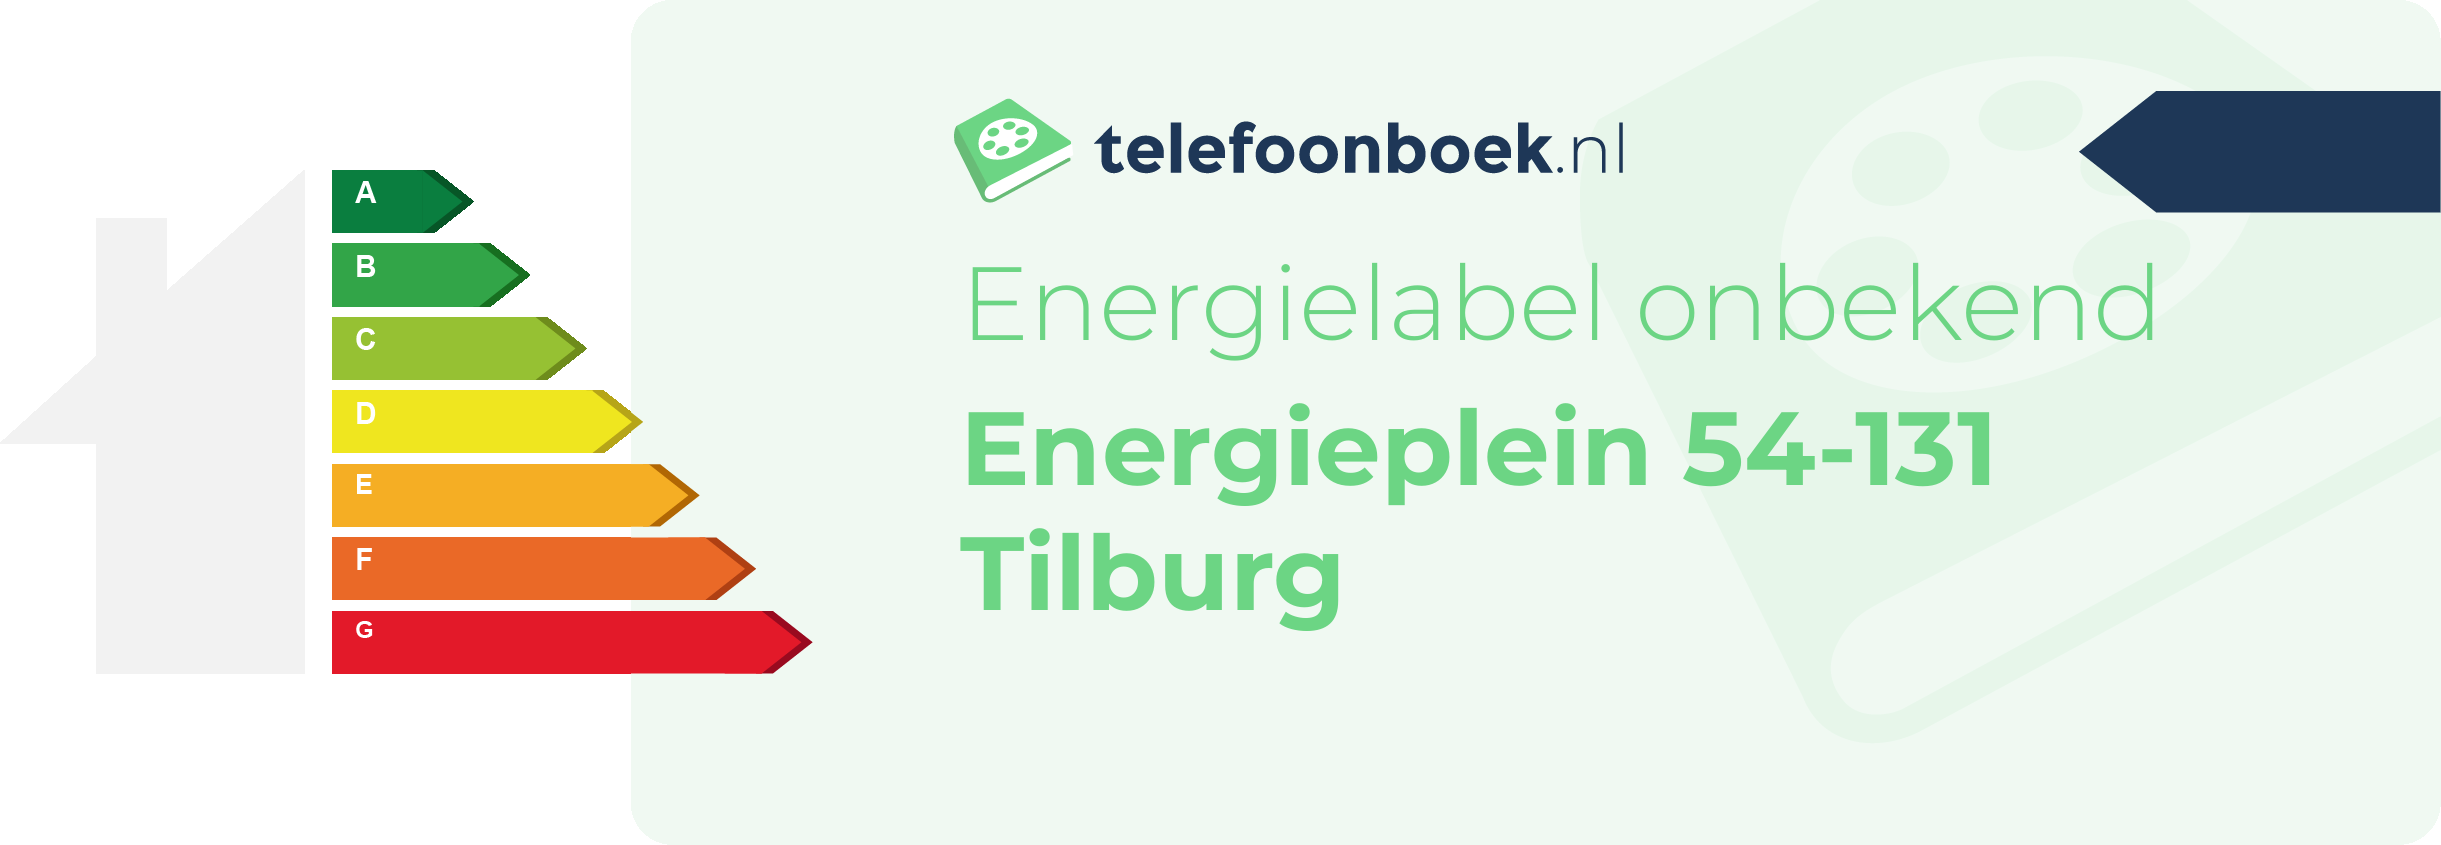 Energielabel Energieplein 54-131 Tilburg